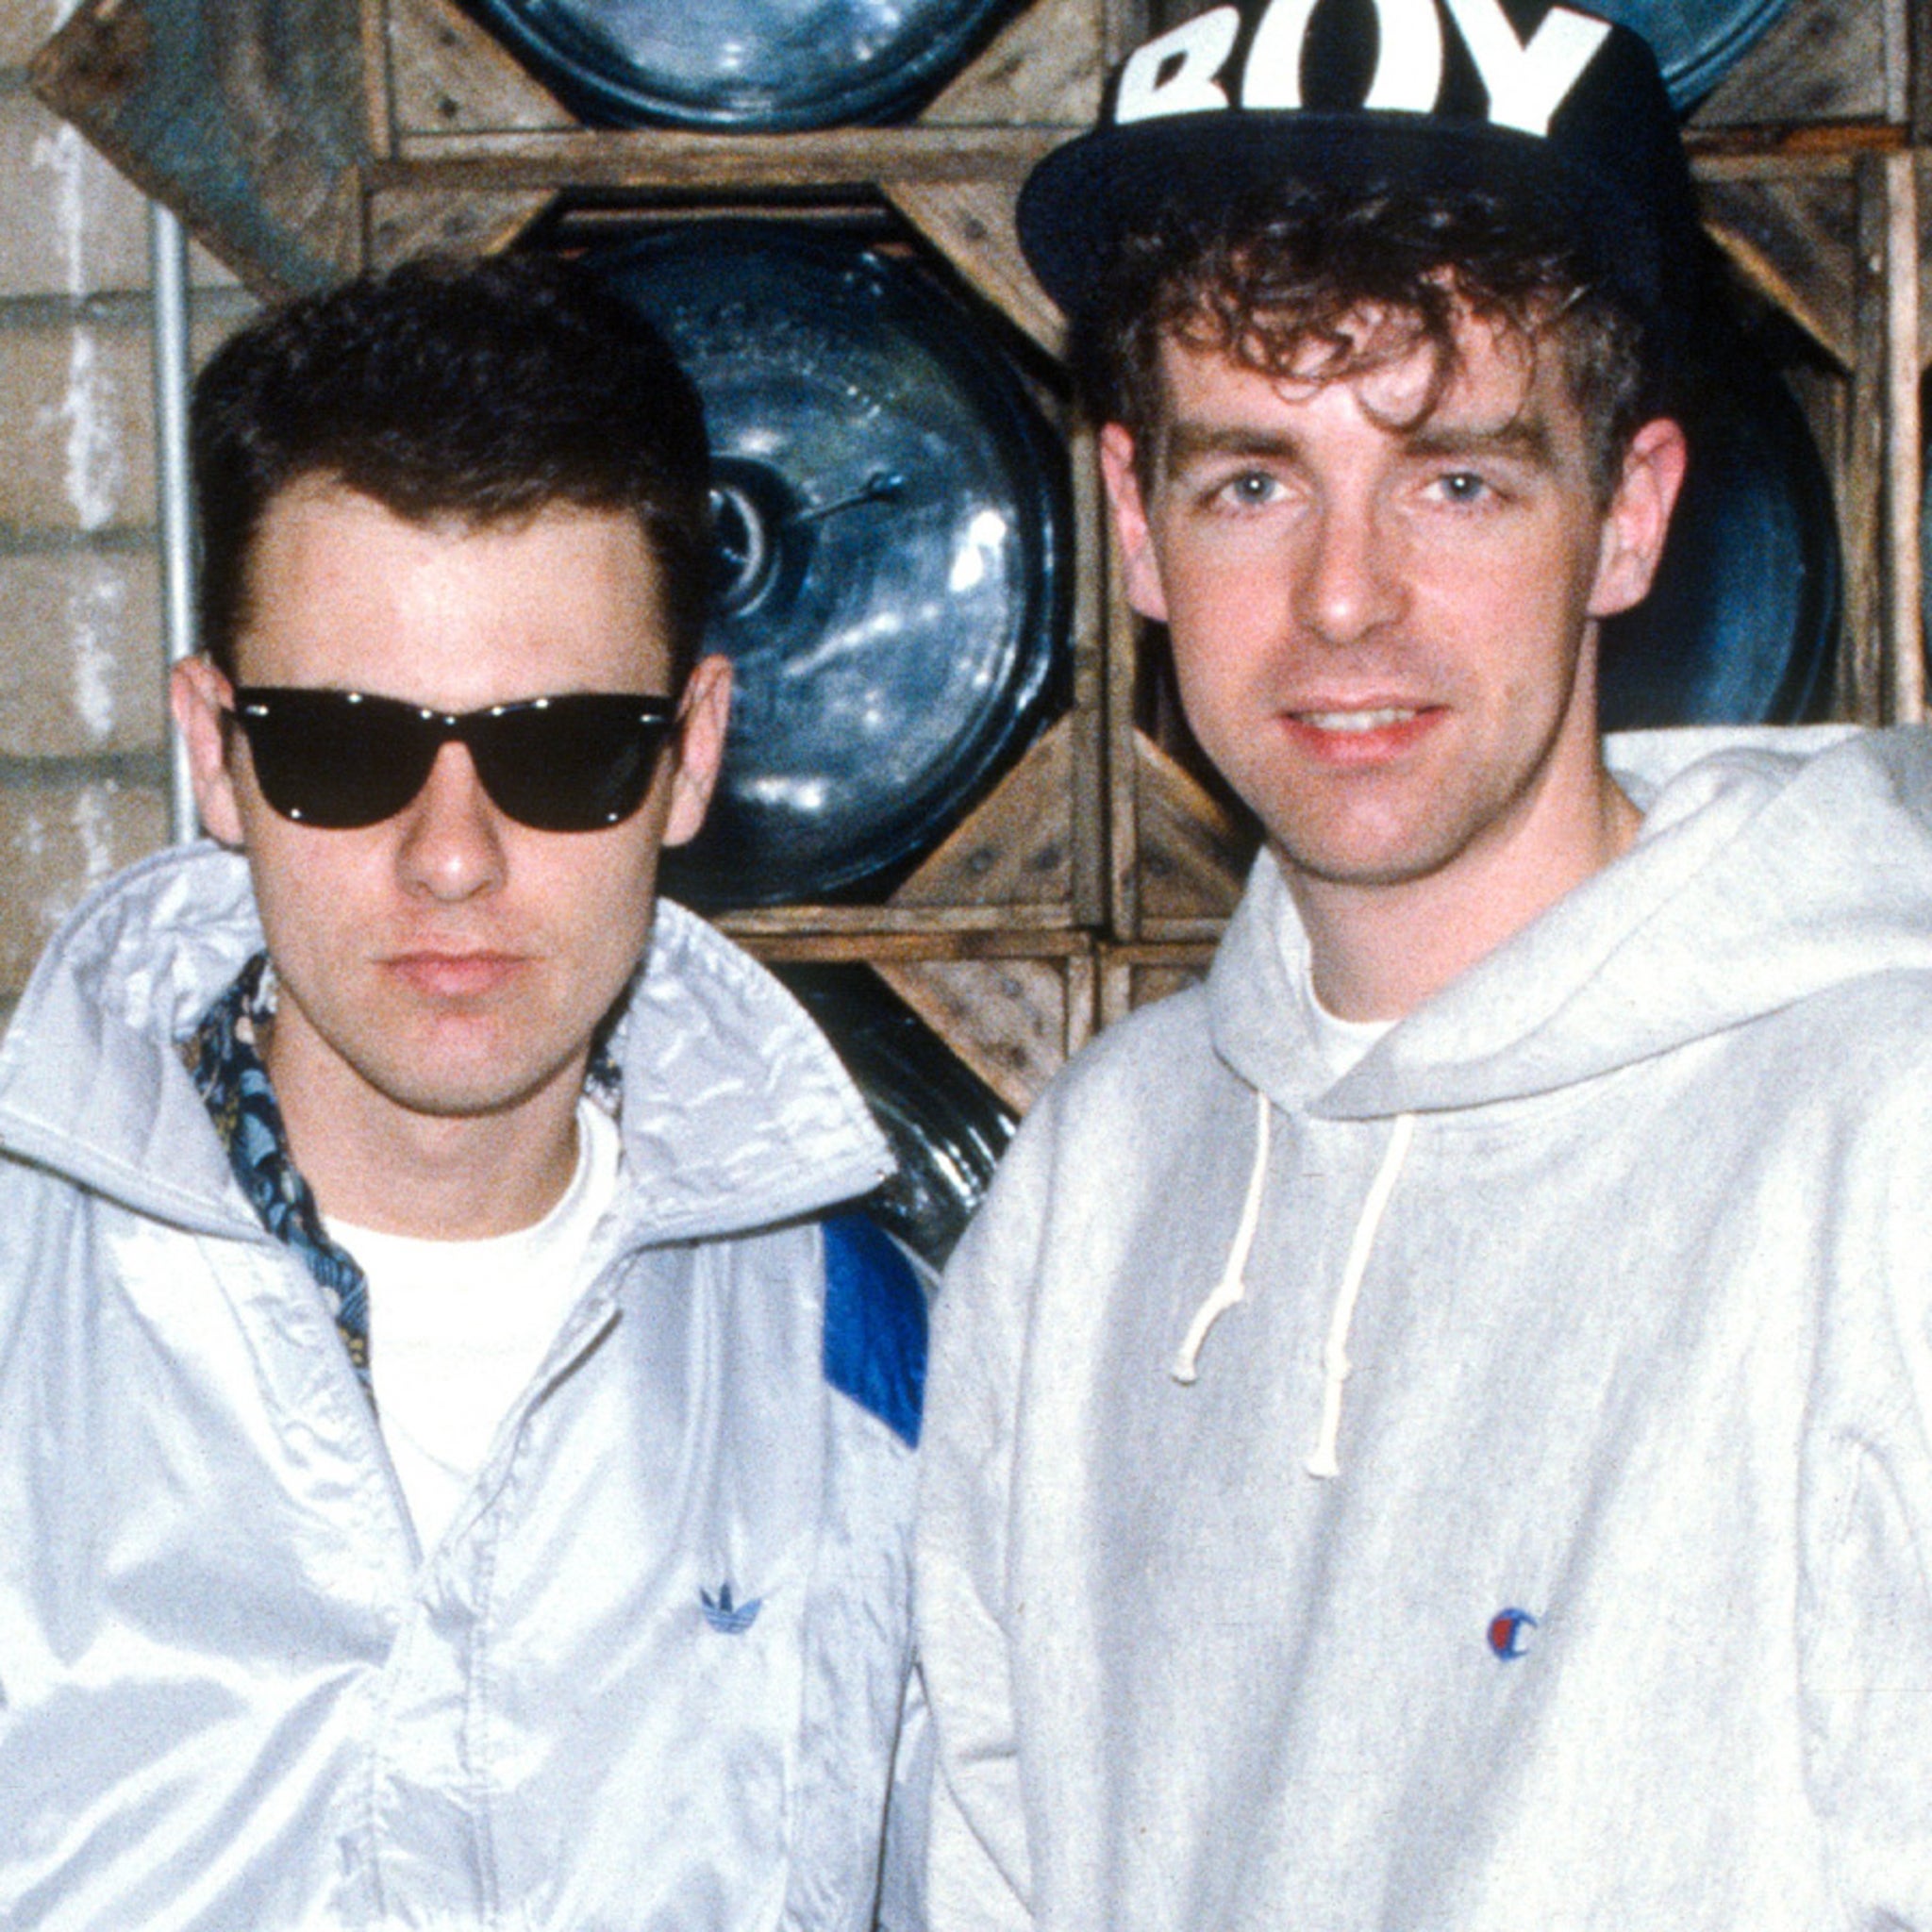 Pet Shop Boys Photo Album - Pet Shop Boys (Chris Lowe; Neil